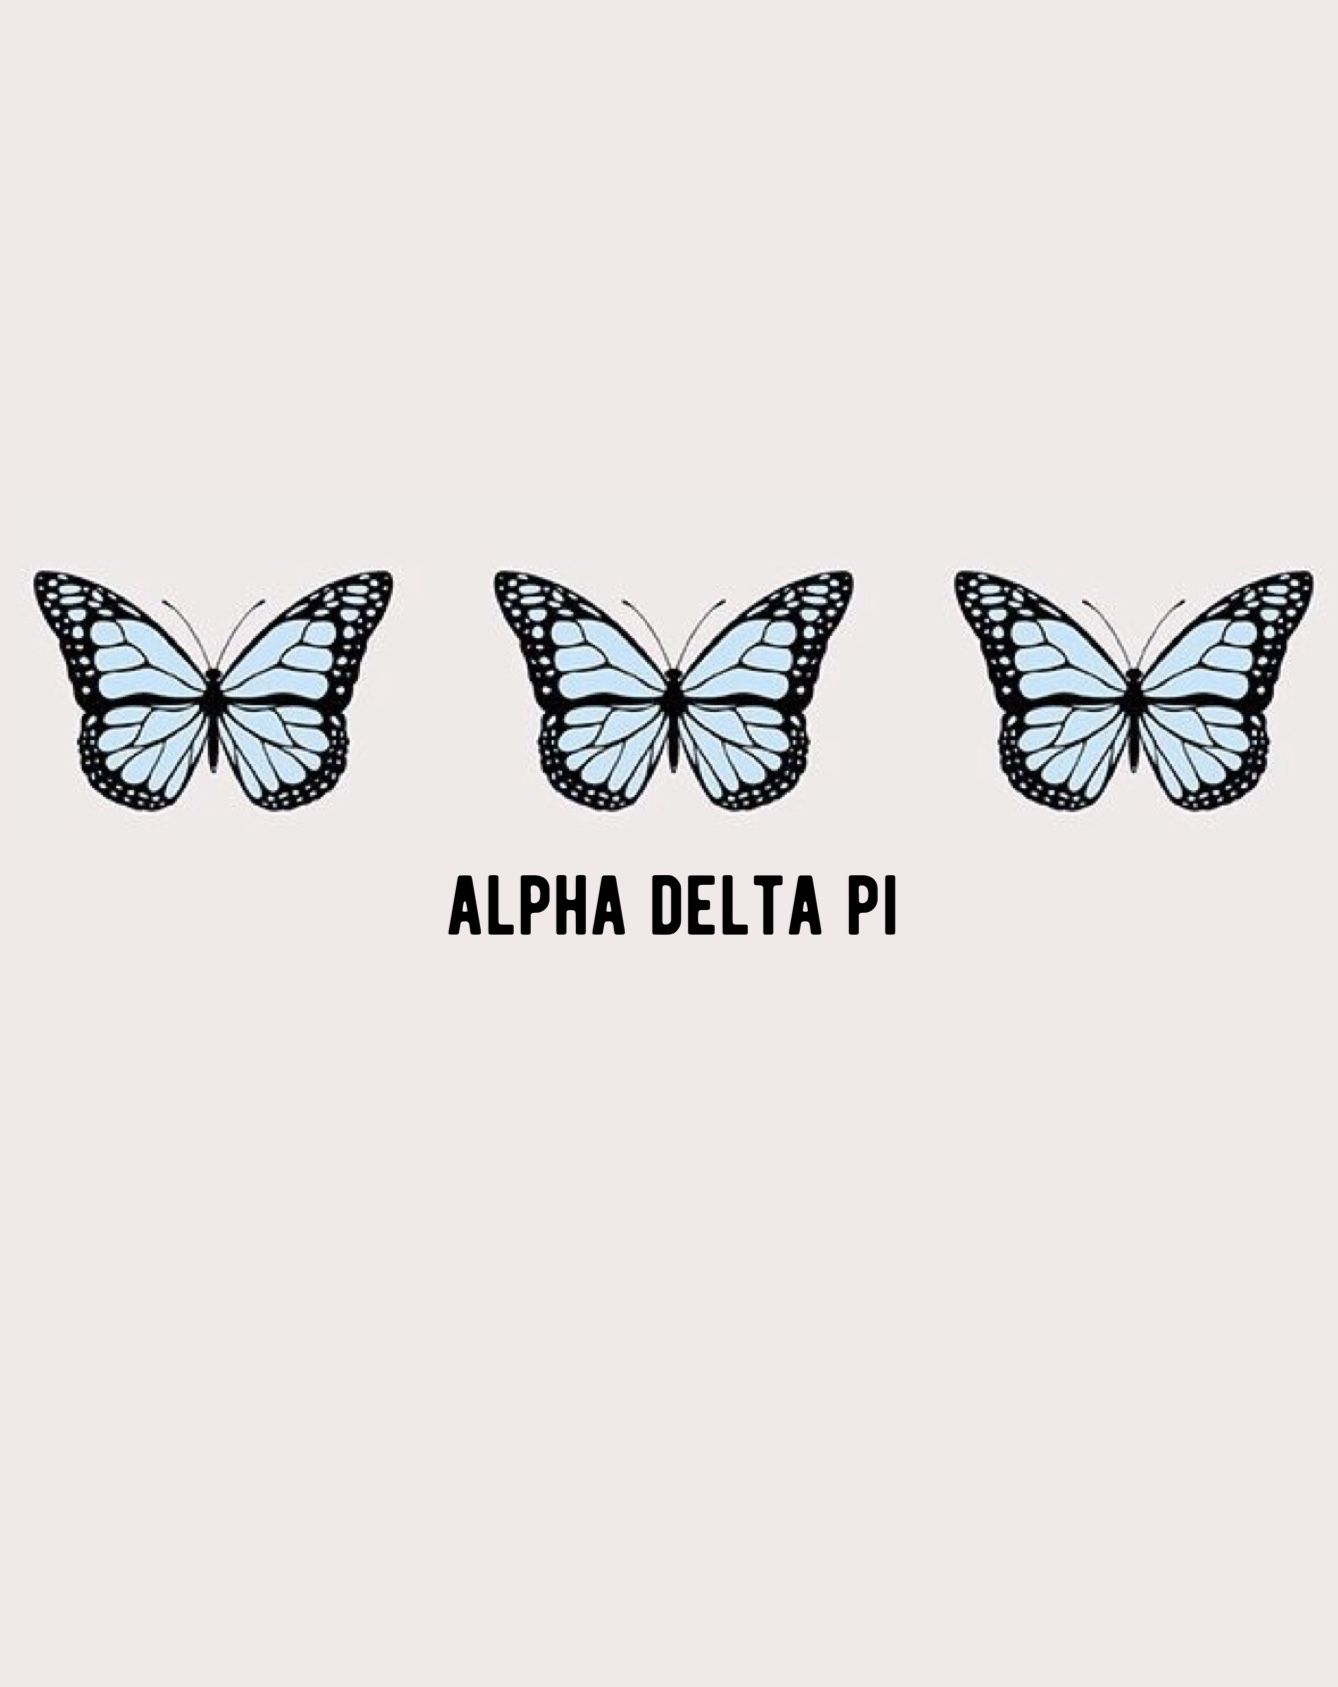 Alpha Delta Pi Wallpapers - Wallpaper Cave